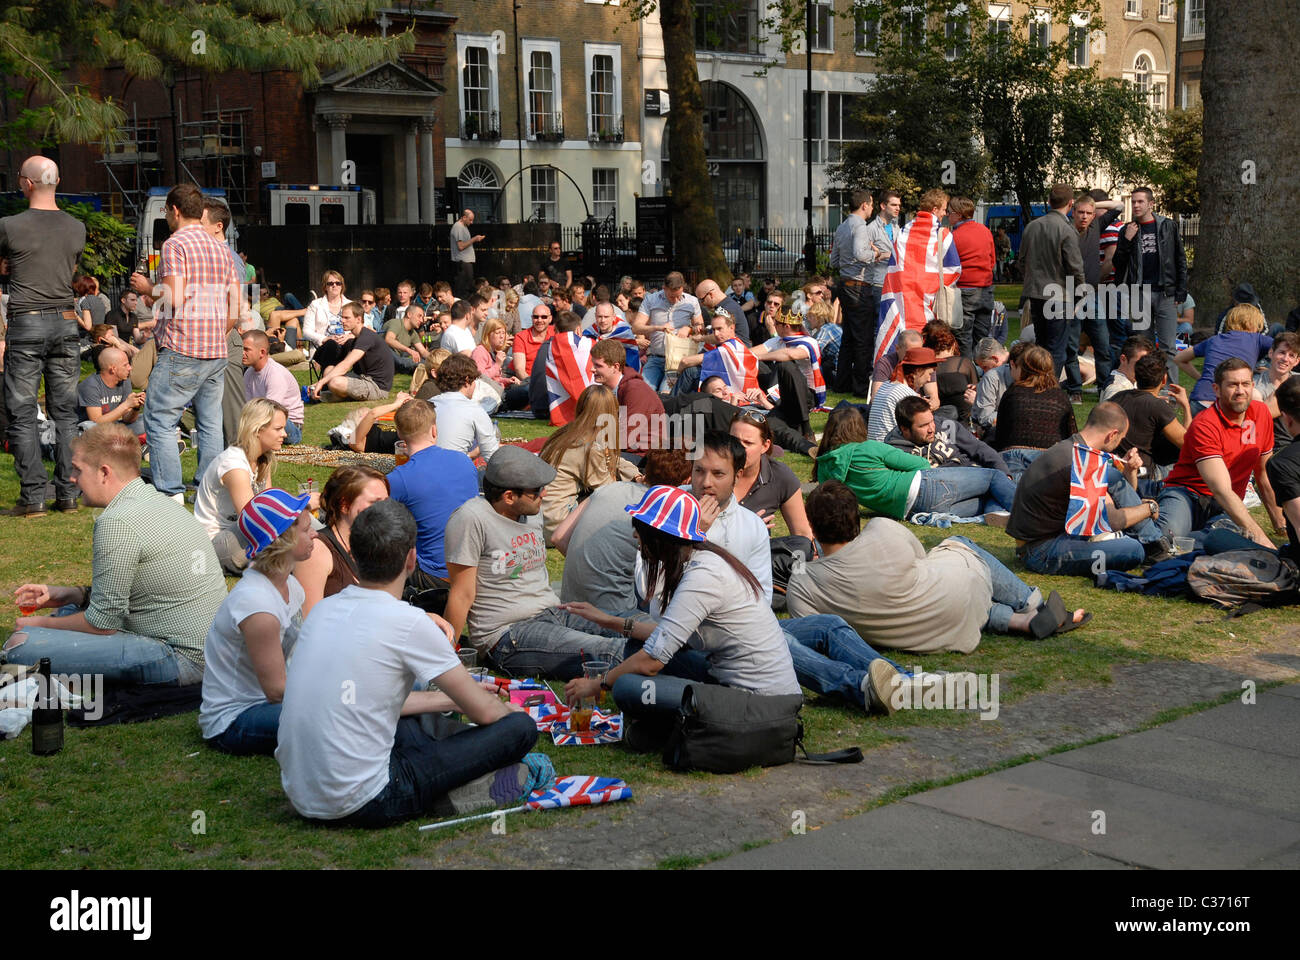 Fête de rue dans le parc à Soho Square, W1, Londres, 29-04-2011. PHOTO © John Robertson, 2011. Banque D'Images